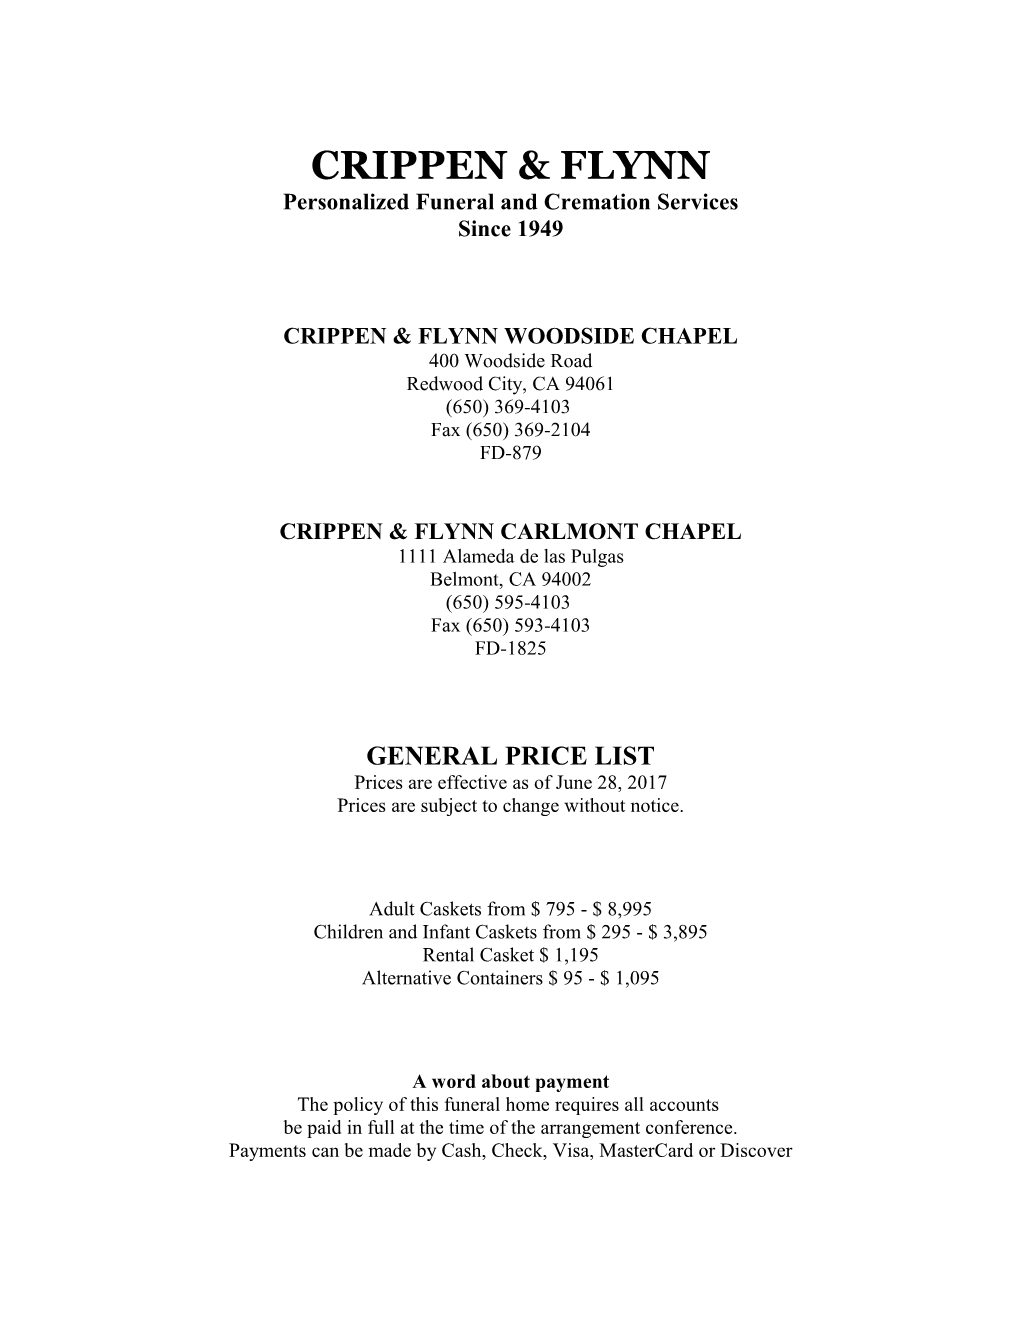 Woodside Chapel Of CRIPPEN & FLYNN